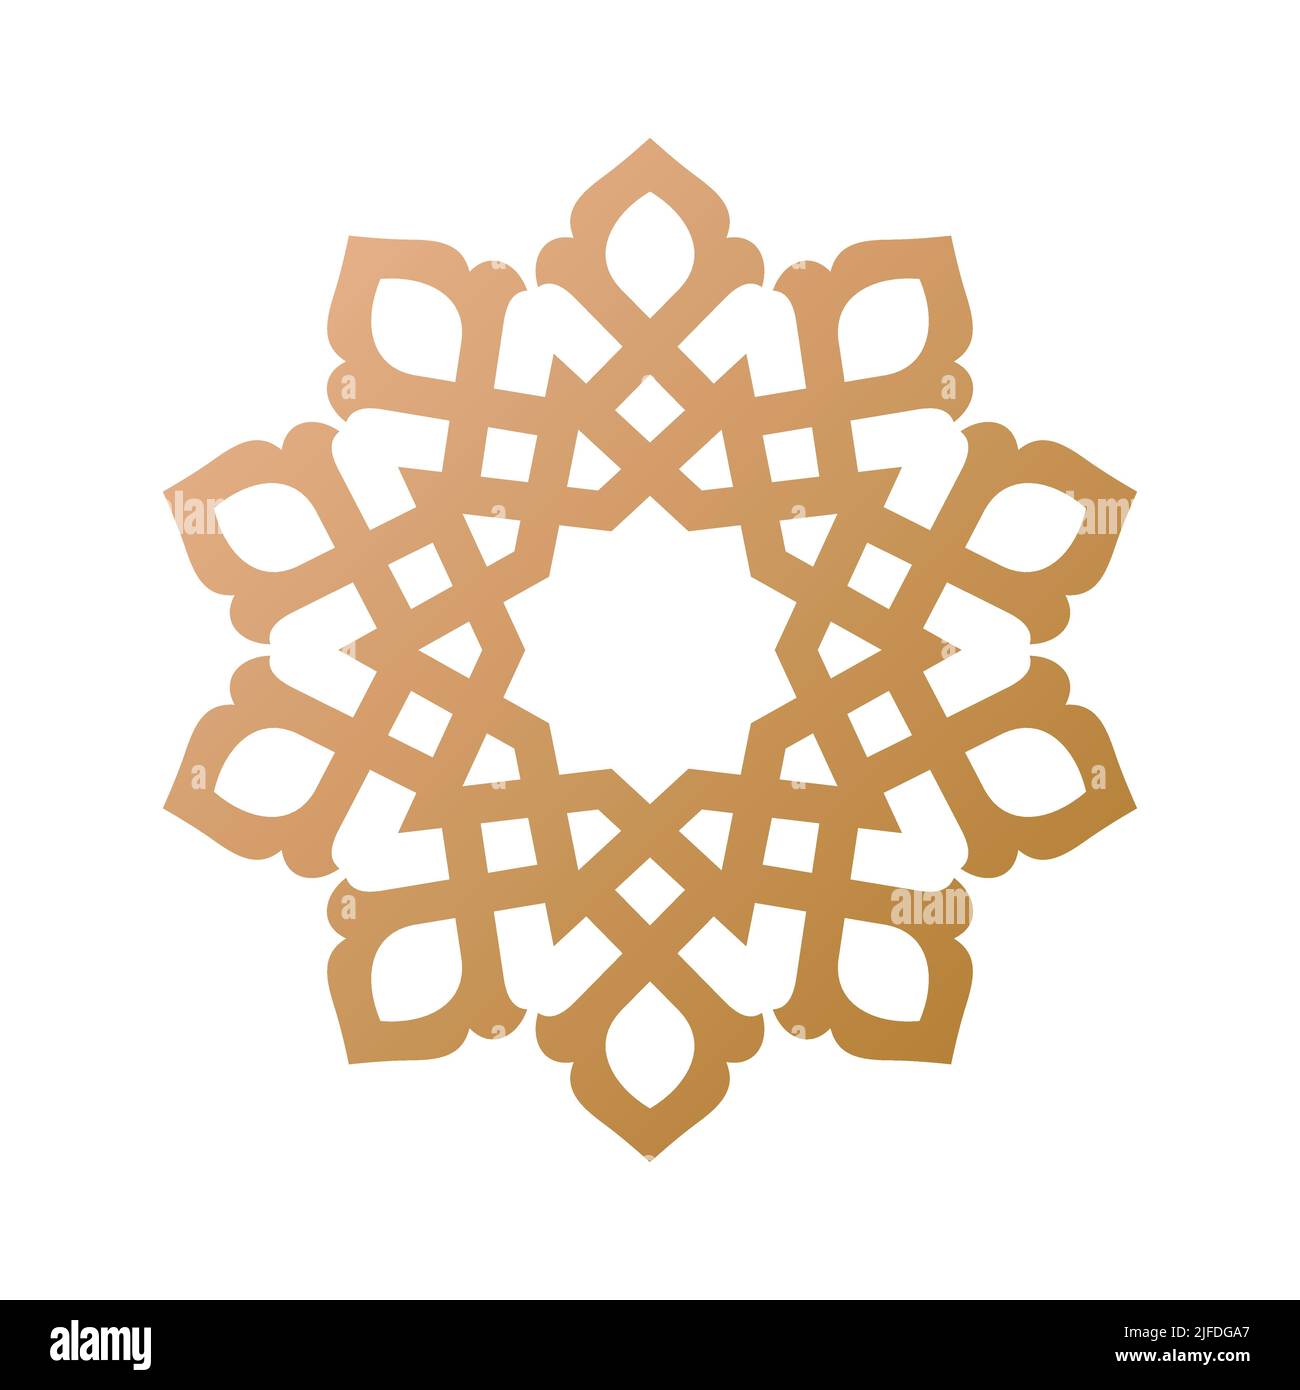 Mandala simple et décoration géométrique ronde arabesque inspiré de l'art persan, arabe, marocain et turc Illustration de Vecteur